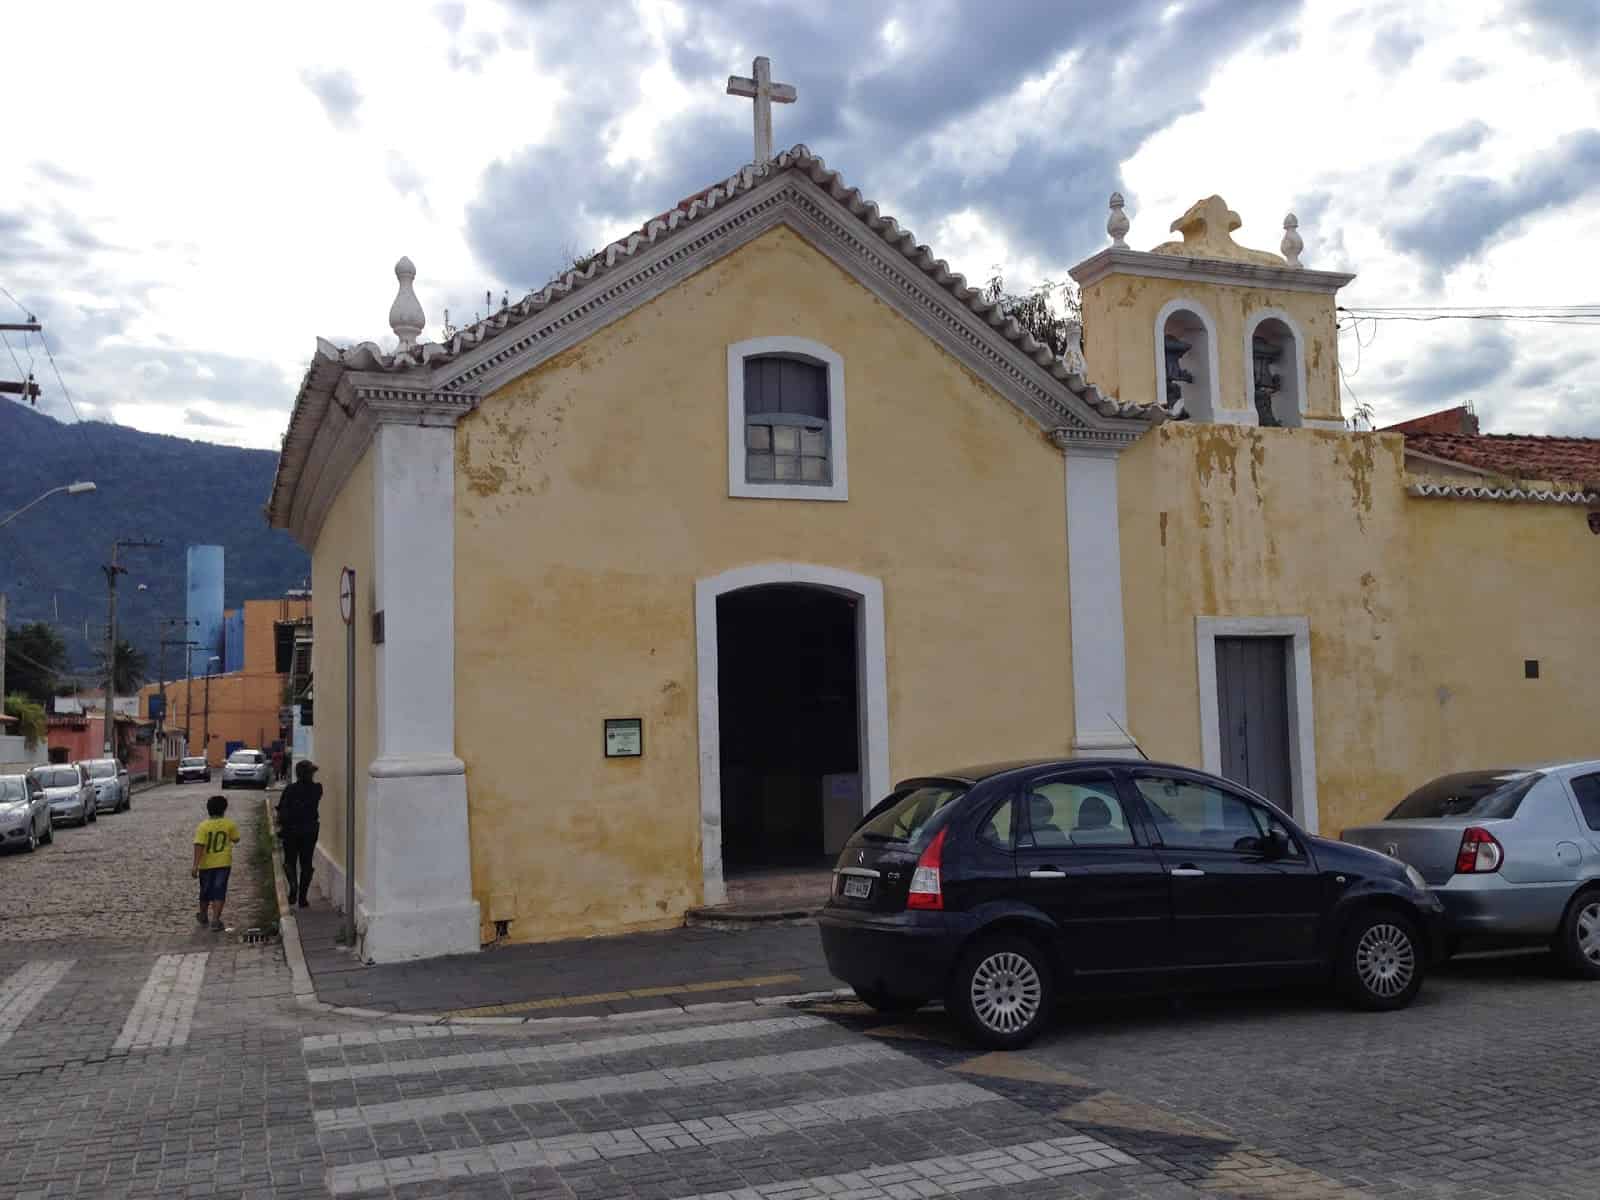 Capela São Gonçalo in São Sebastião, Brazil